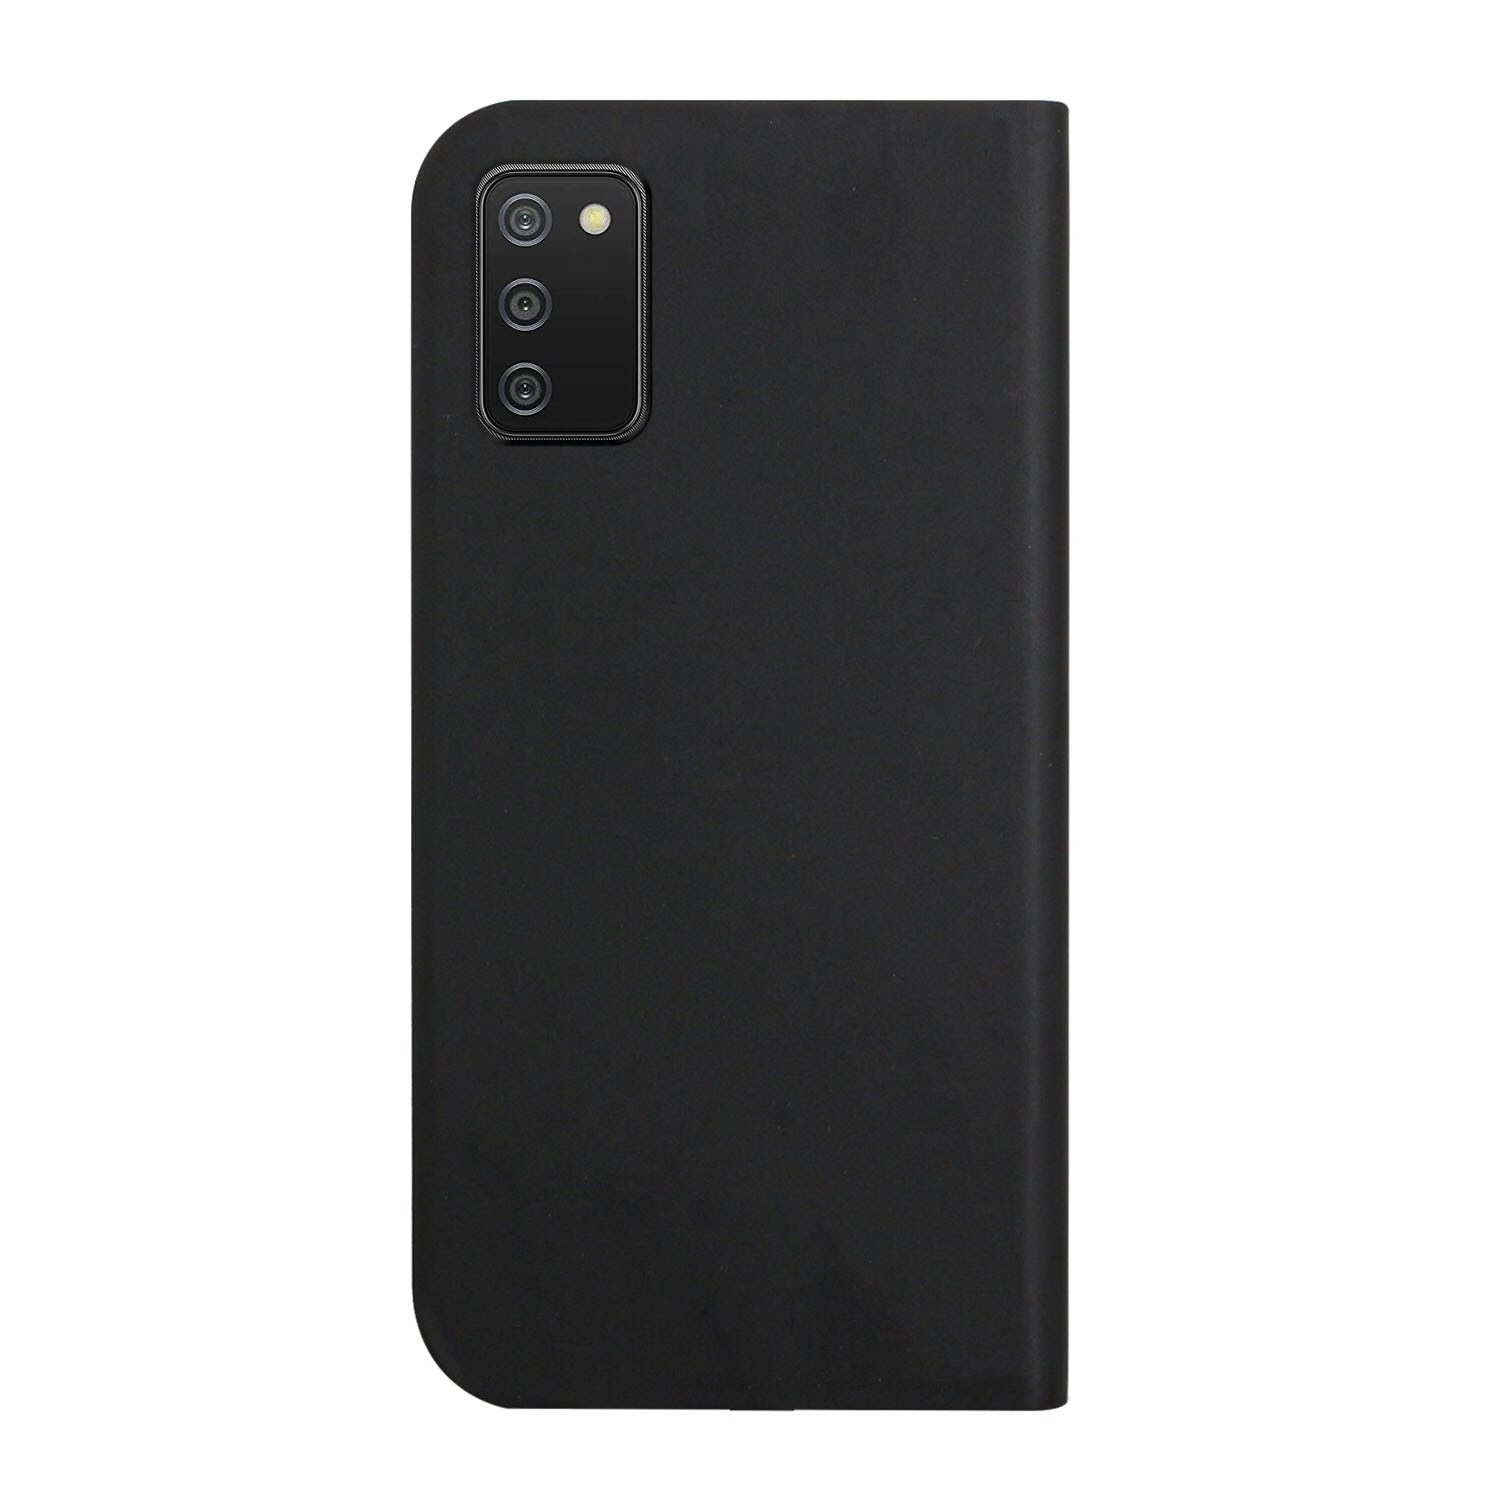 Erittäin ohut matkapuhelimen kuori pidikkeellä Samsung Galaxy A02s (US-version) - Musta